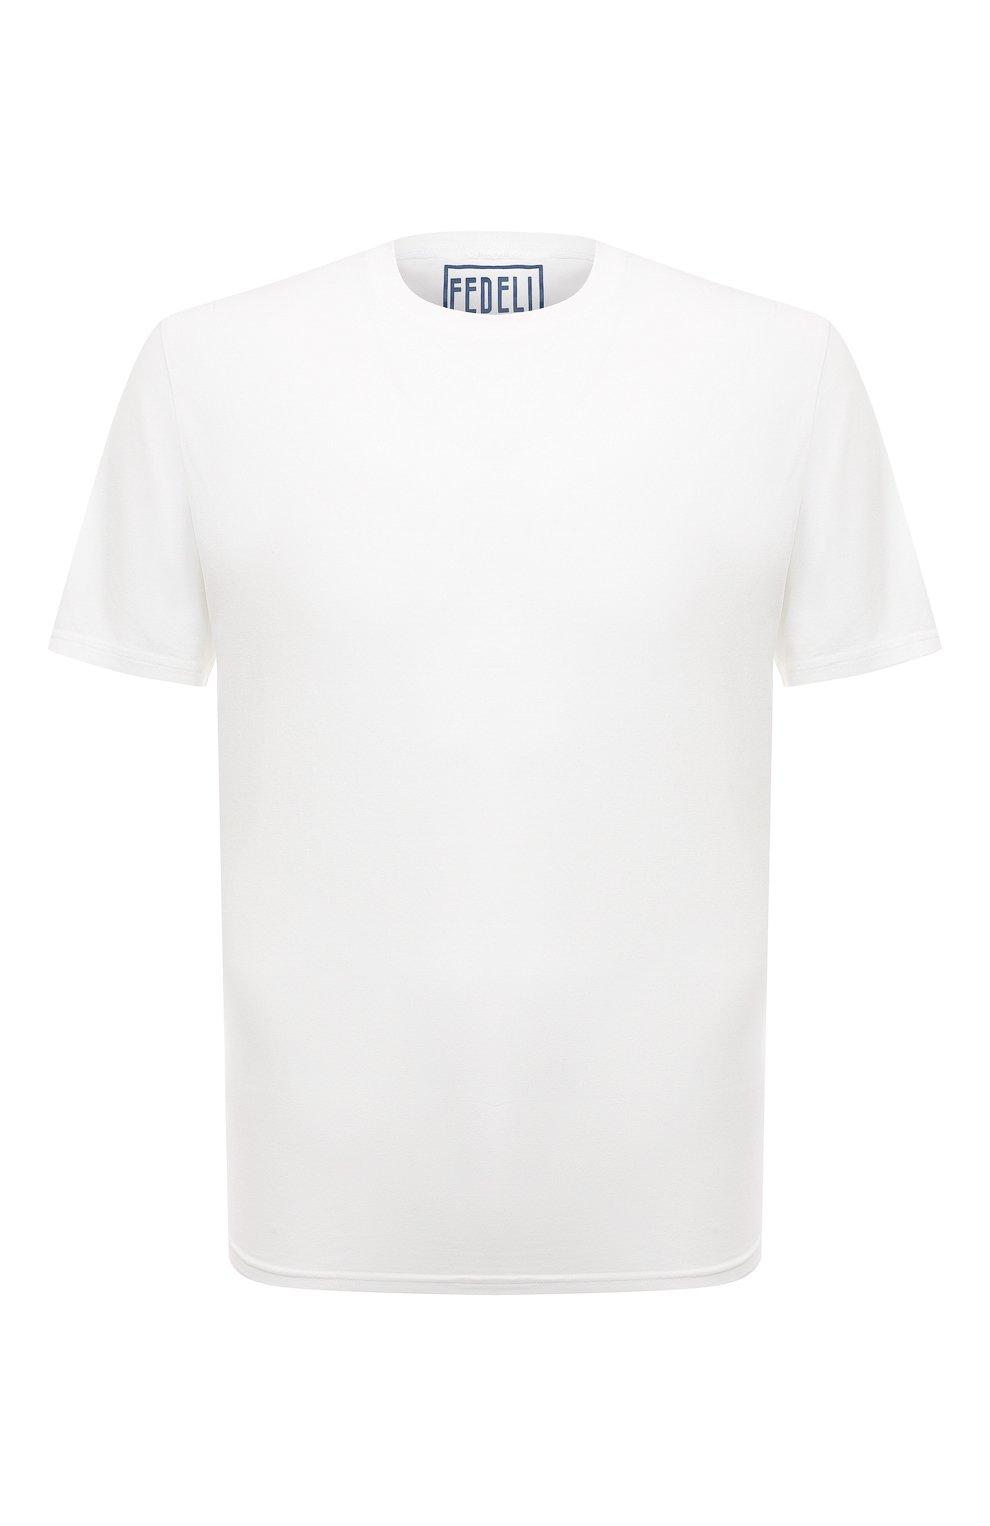 Хлопковая футболка Fedeli белого цвета